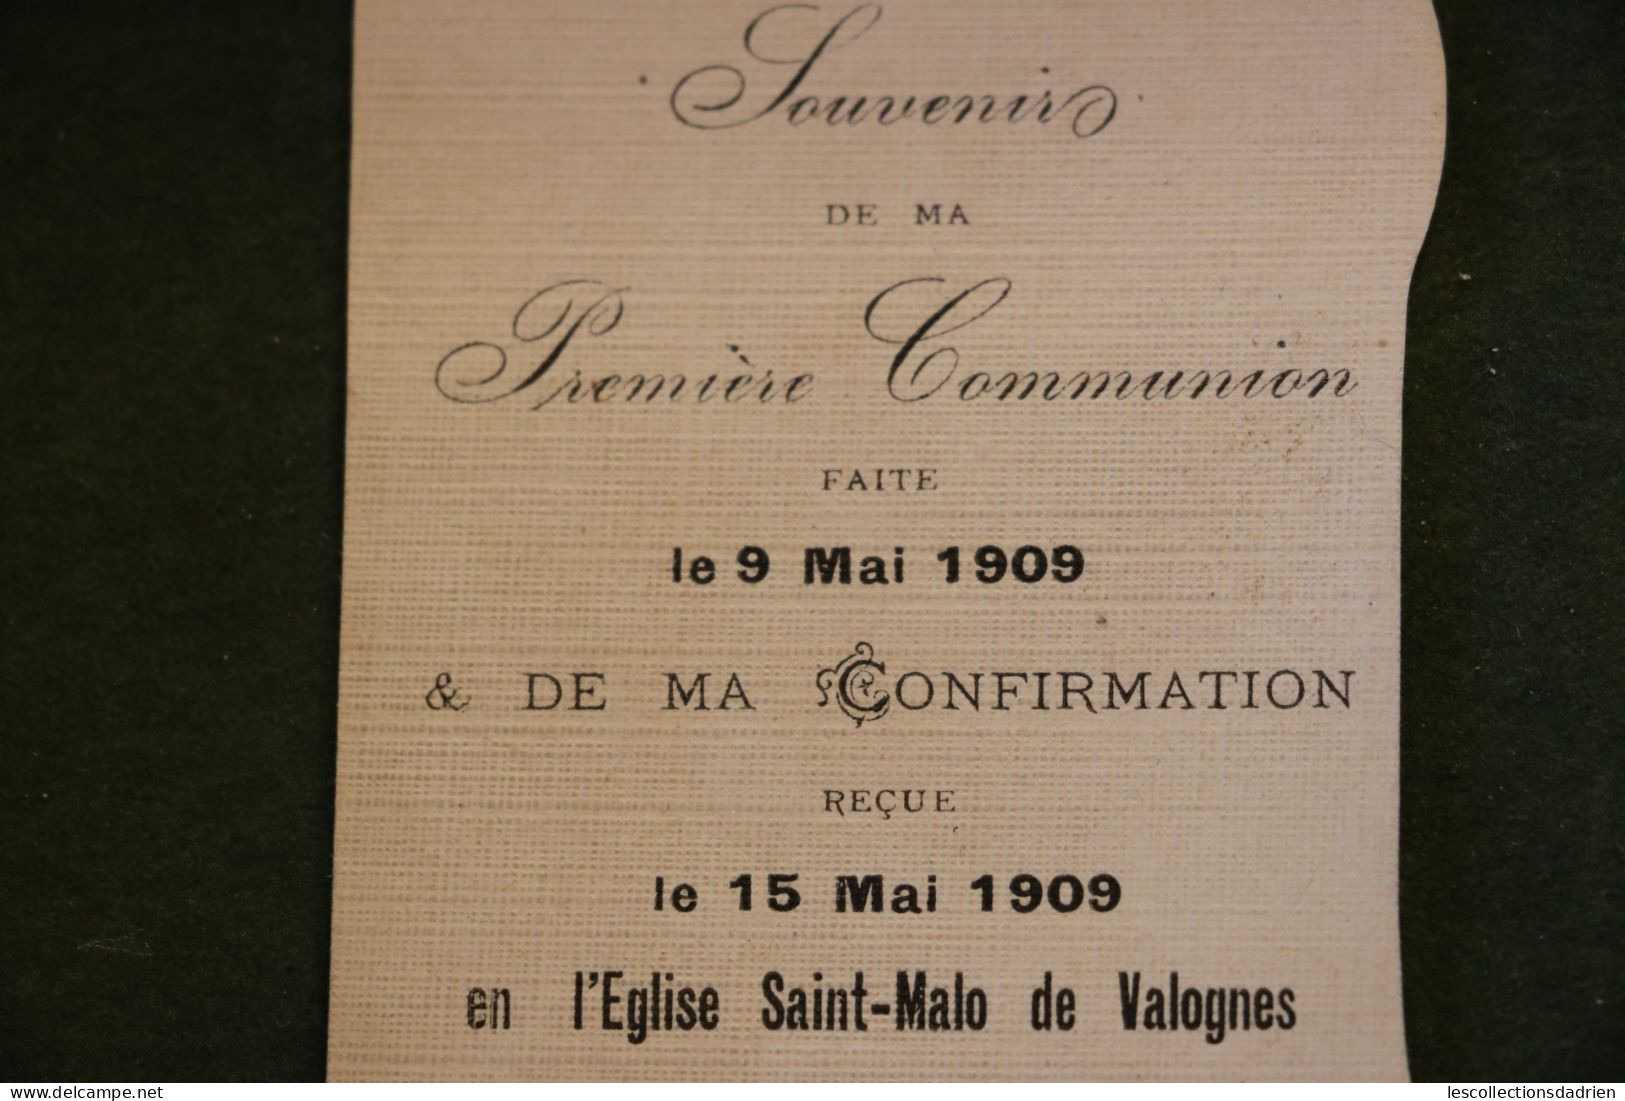 Image religieuse Première Communion Saint-Malo de Valogne 1909 - Art Nouveau bruyère - Holy card